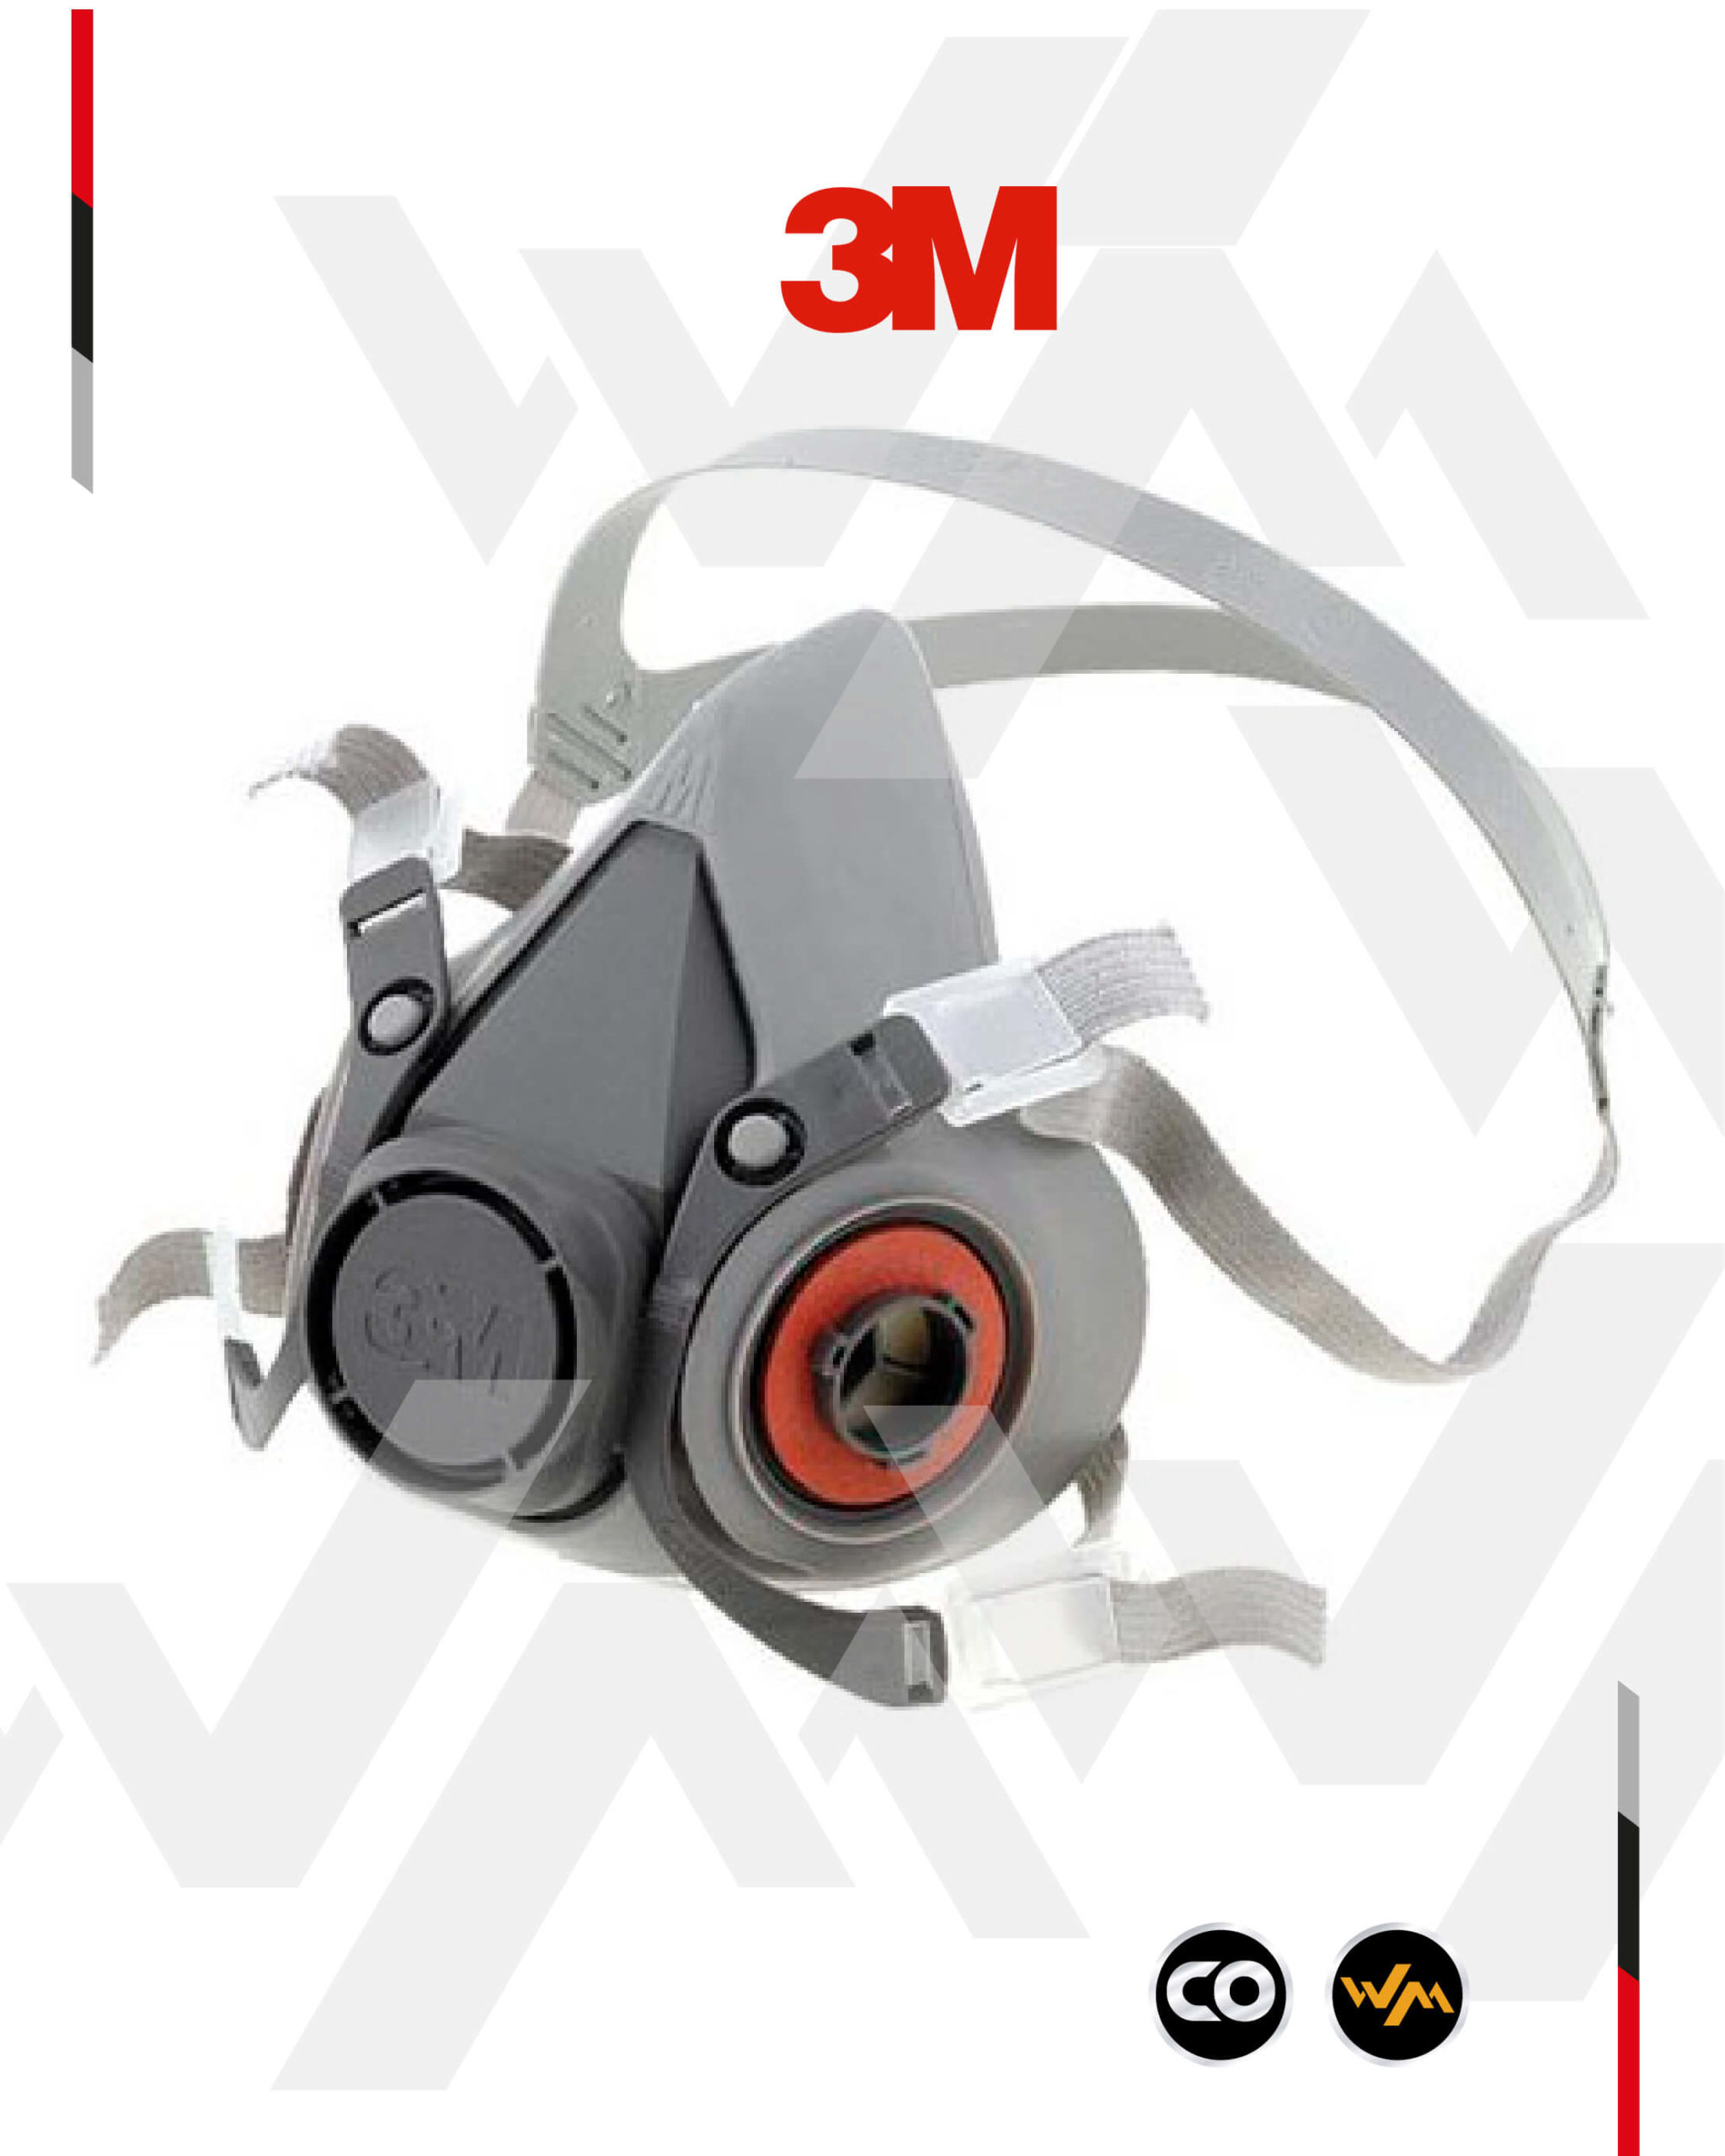 3M - Respirador reutilizable de media pieza, S